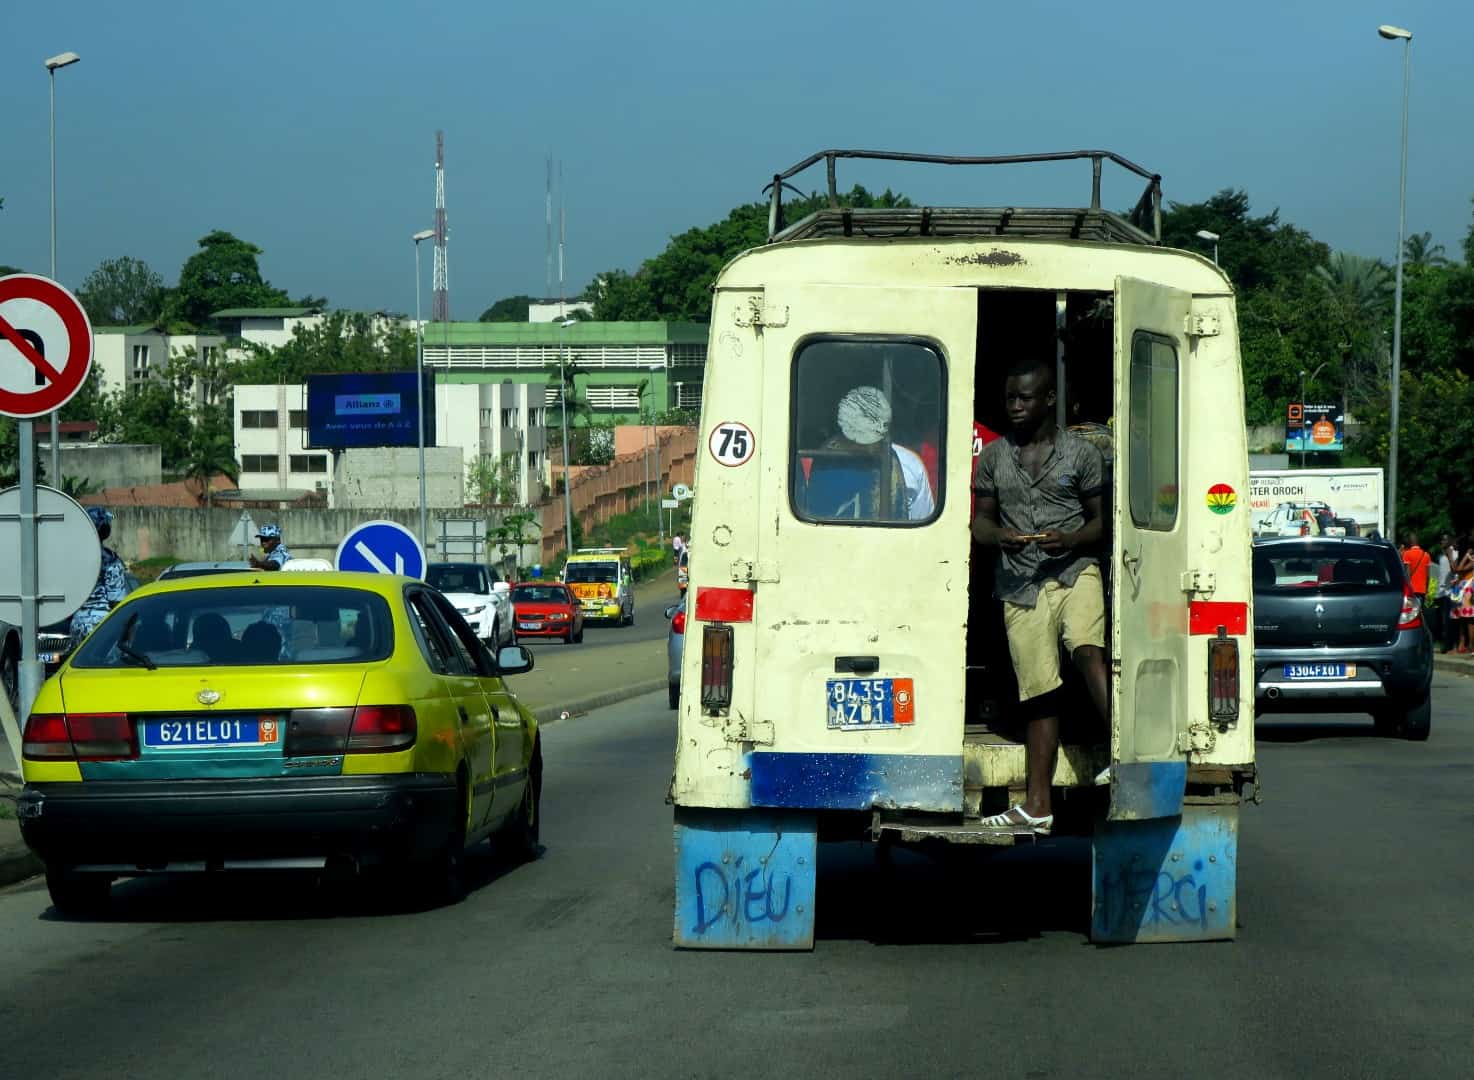 Jbaka und Taxi im Verkehr - Abidjan